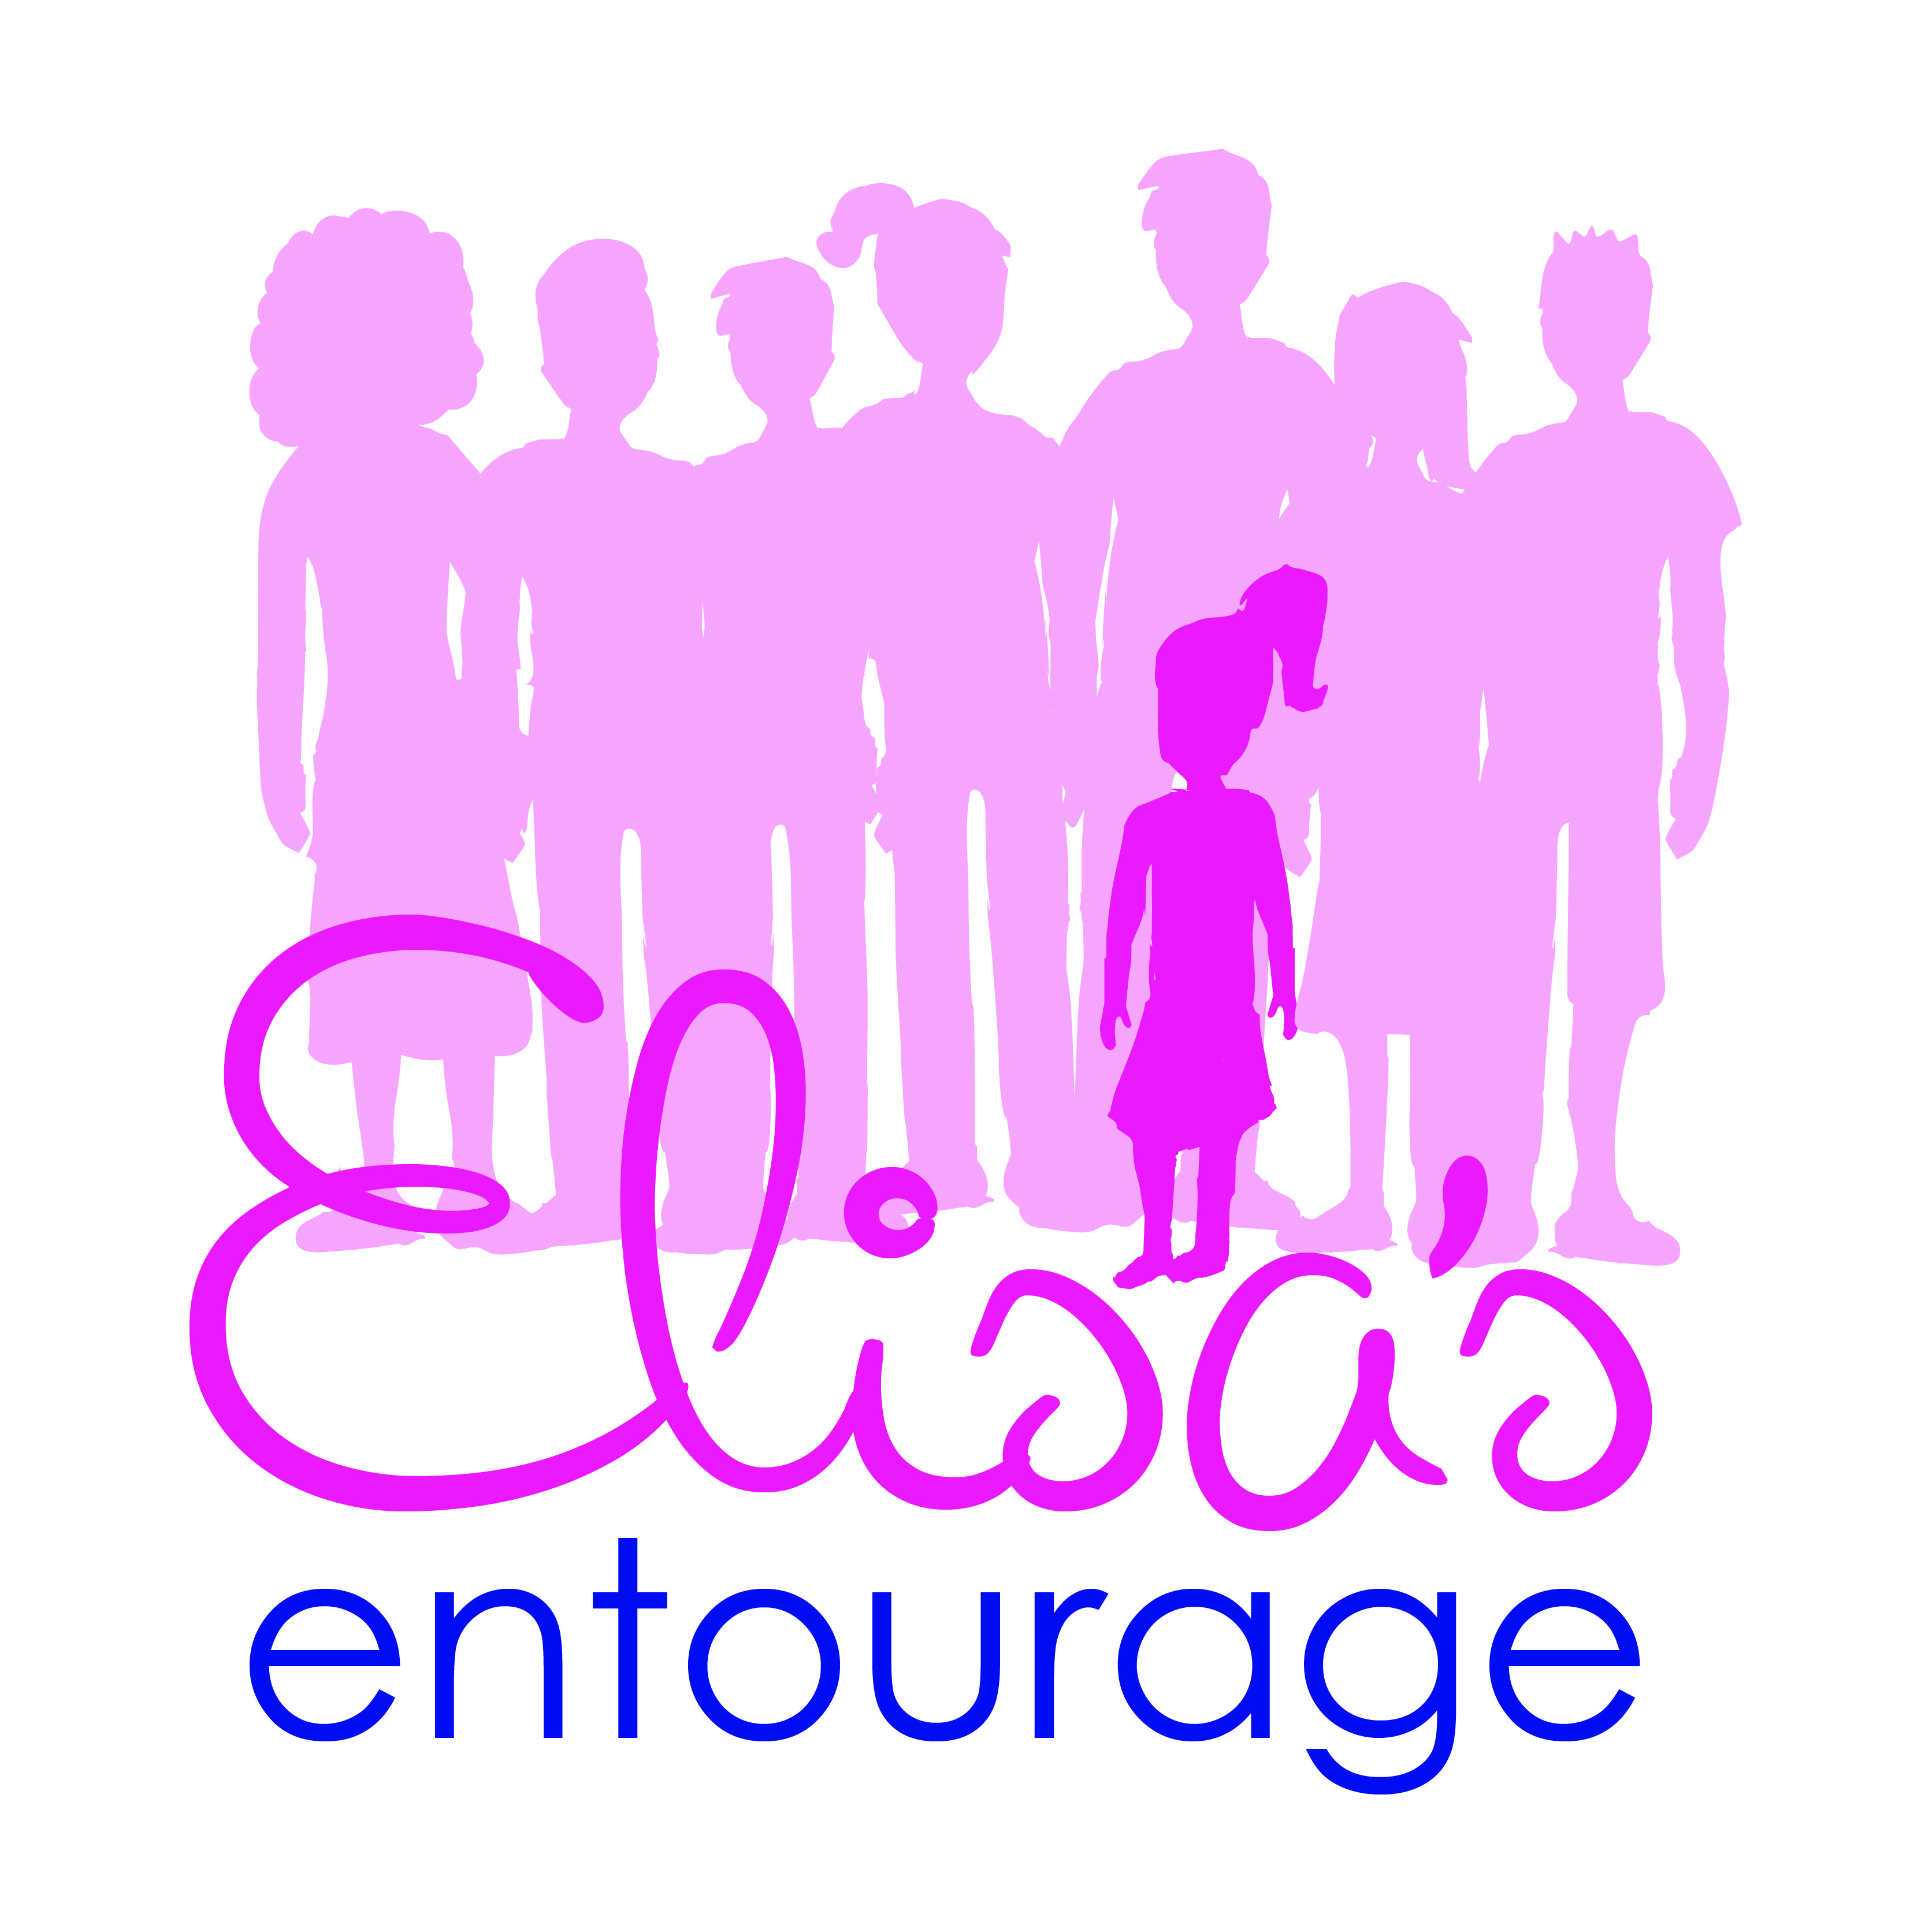 Elisa's Entourage